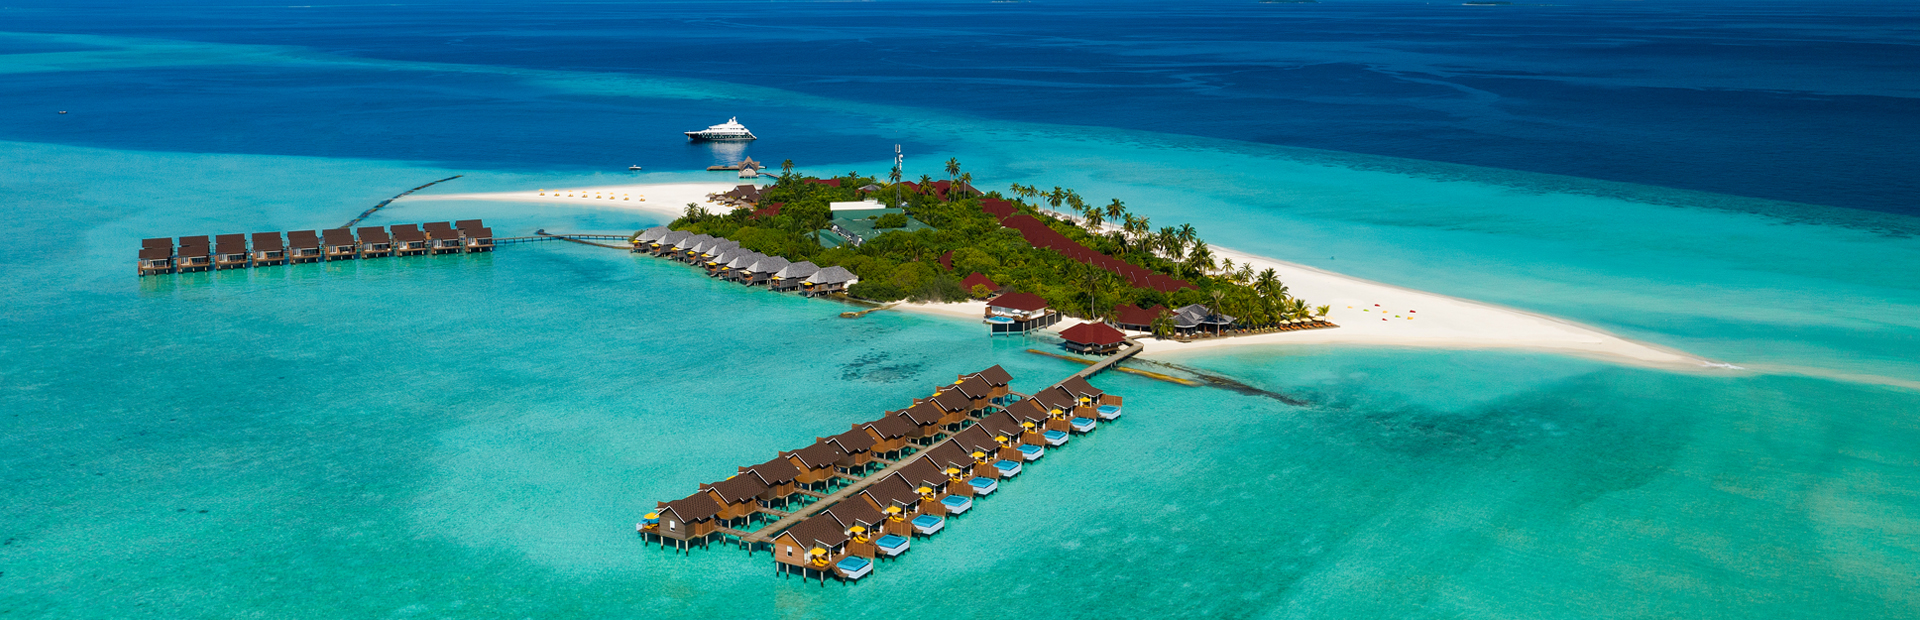 Dhigufaru island. Остров Фаруколуфуши Мальдивы. Ангага Мальдивы. Утхему Гандувару Мальдивы. Dhigufaru Island Resort Maldives.